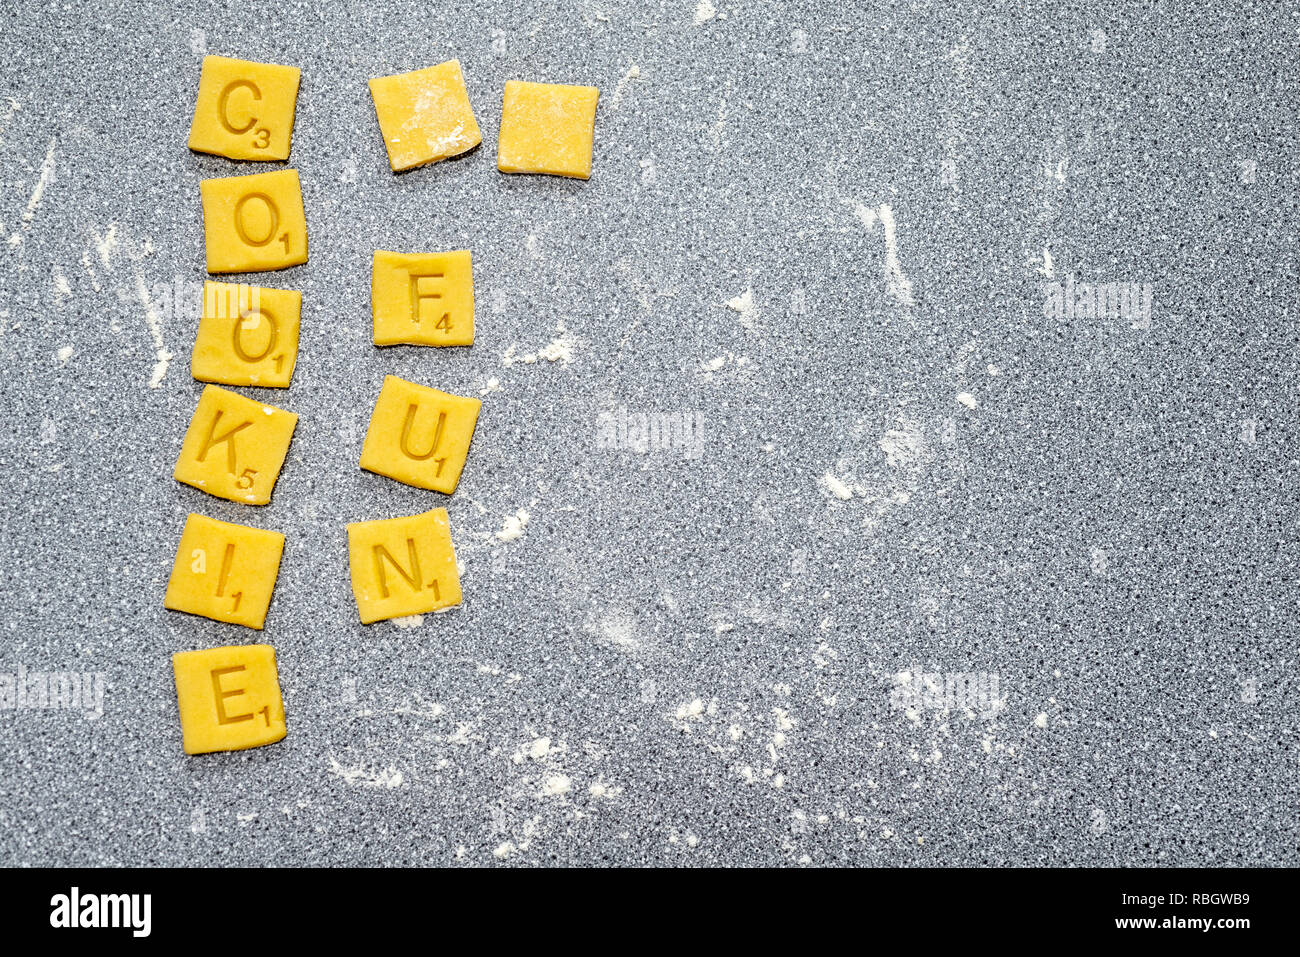 Kochen Spaß - scrabble Worte von Keks/Plätzchenteig. Stockfoto